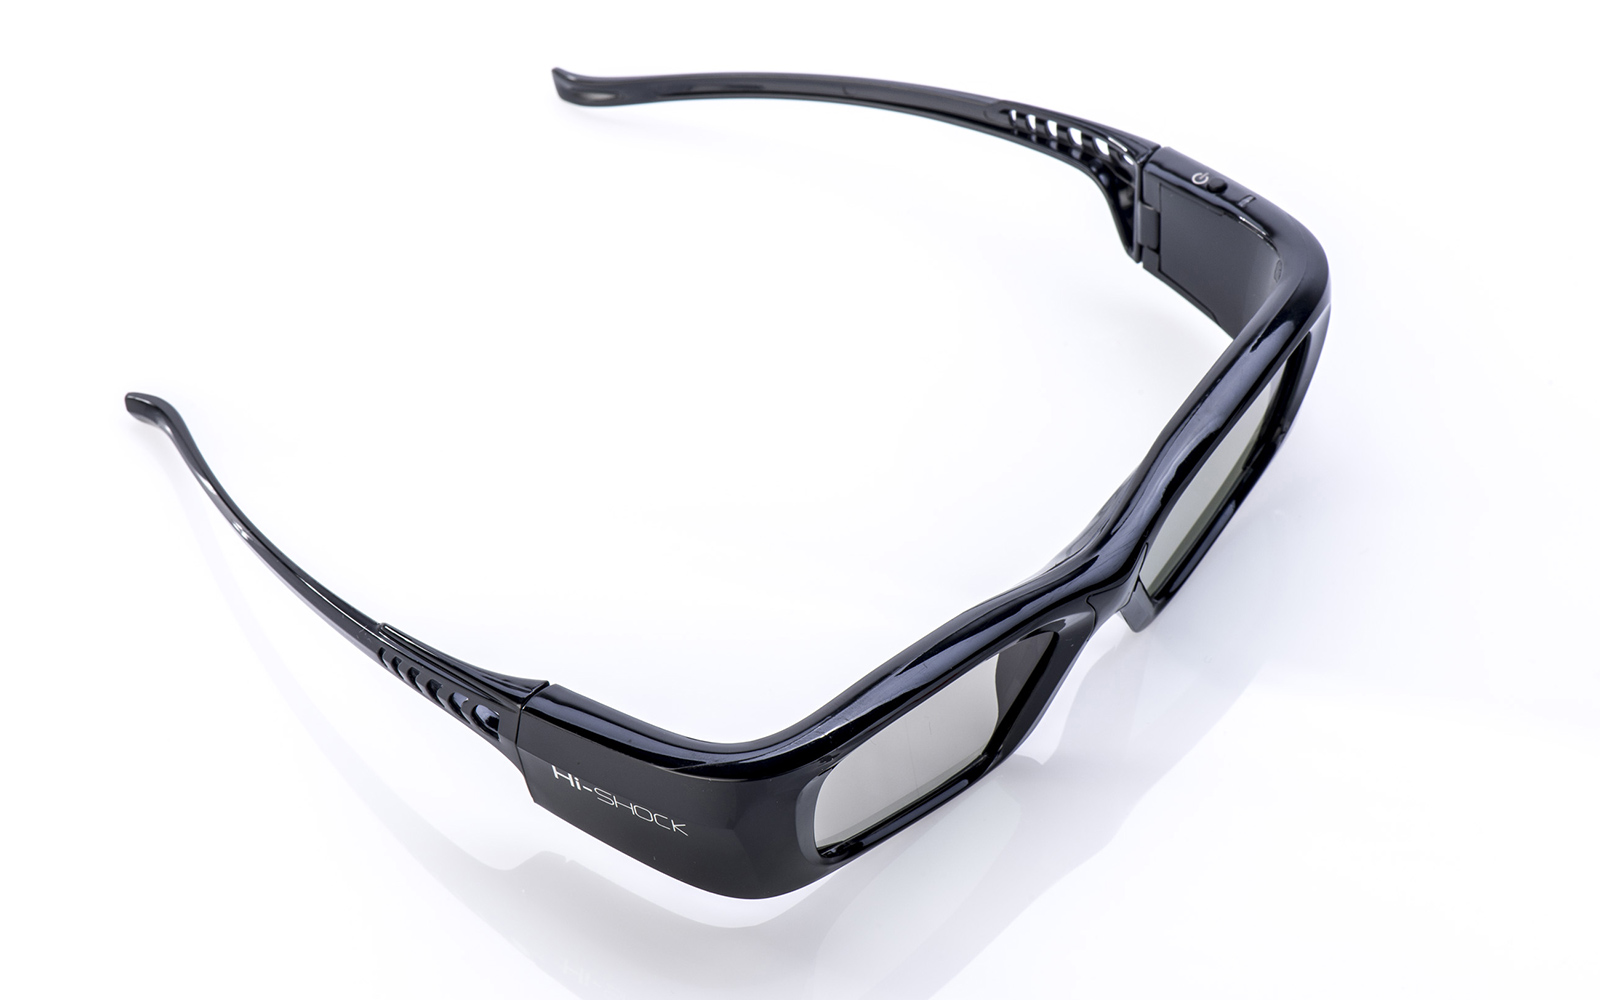 Beamer - DLP 3D Brille für aktive DLP Brille 3D Pro Black HI-SHOCK - schwarz wiederaufladbar Link 3D Diamond